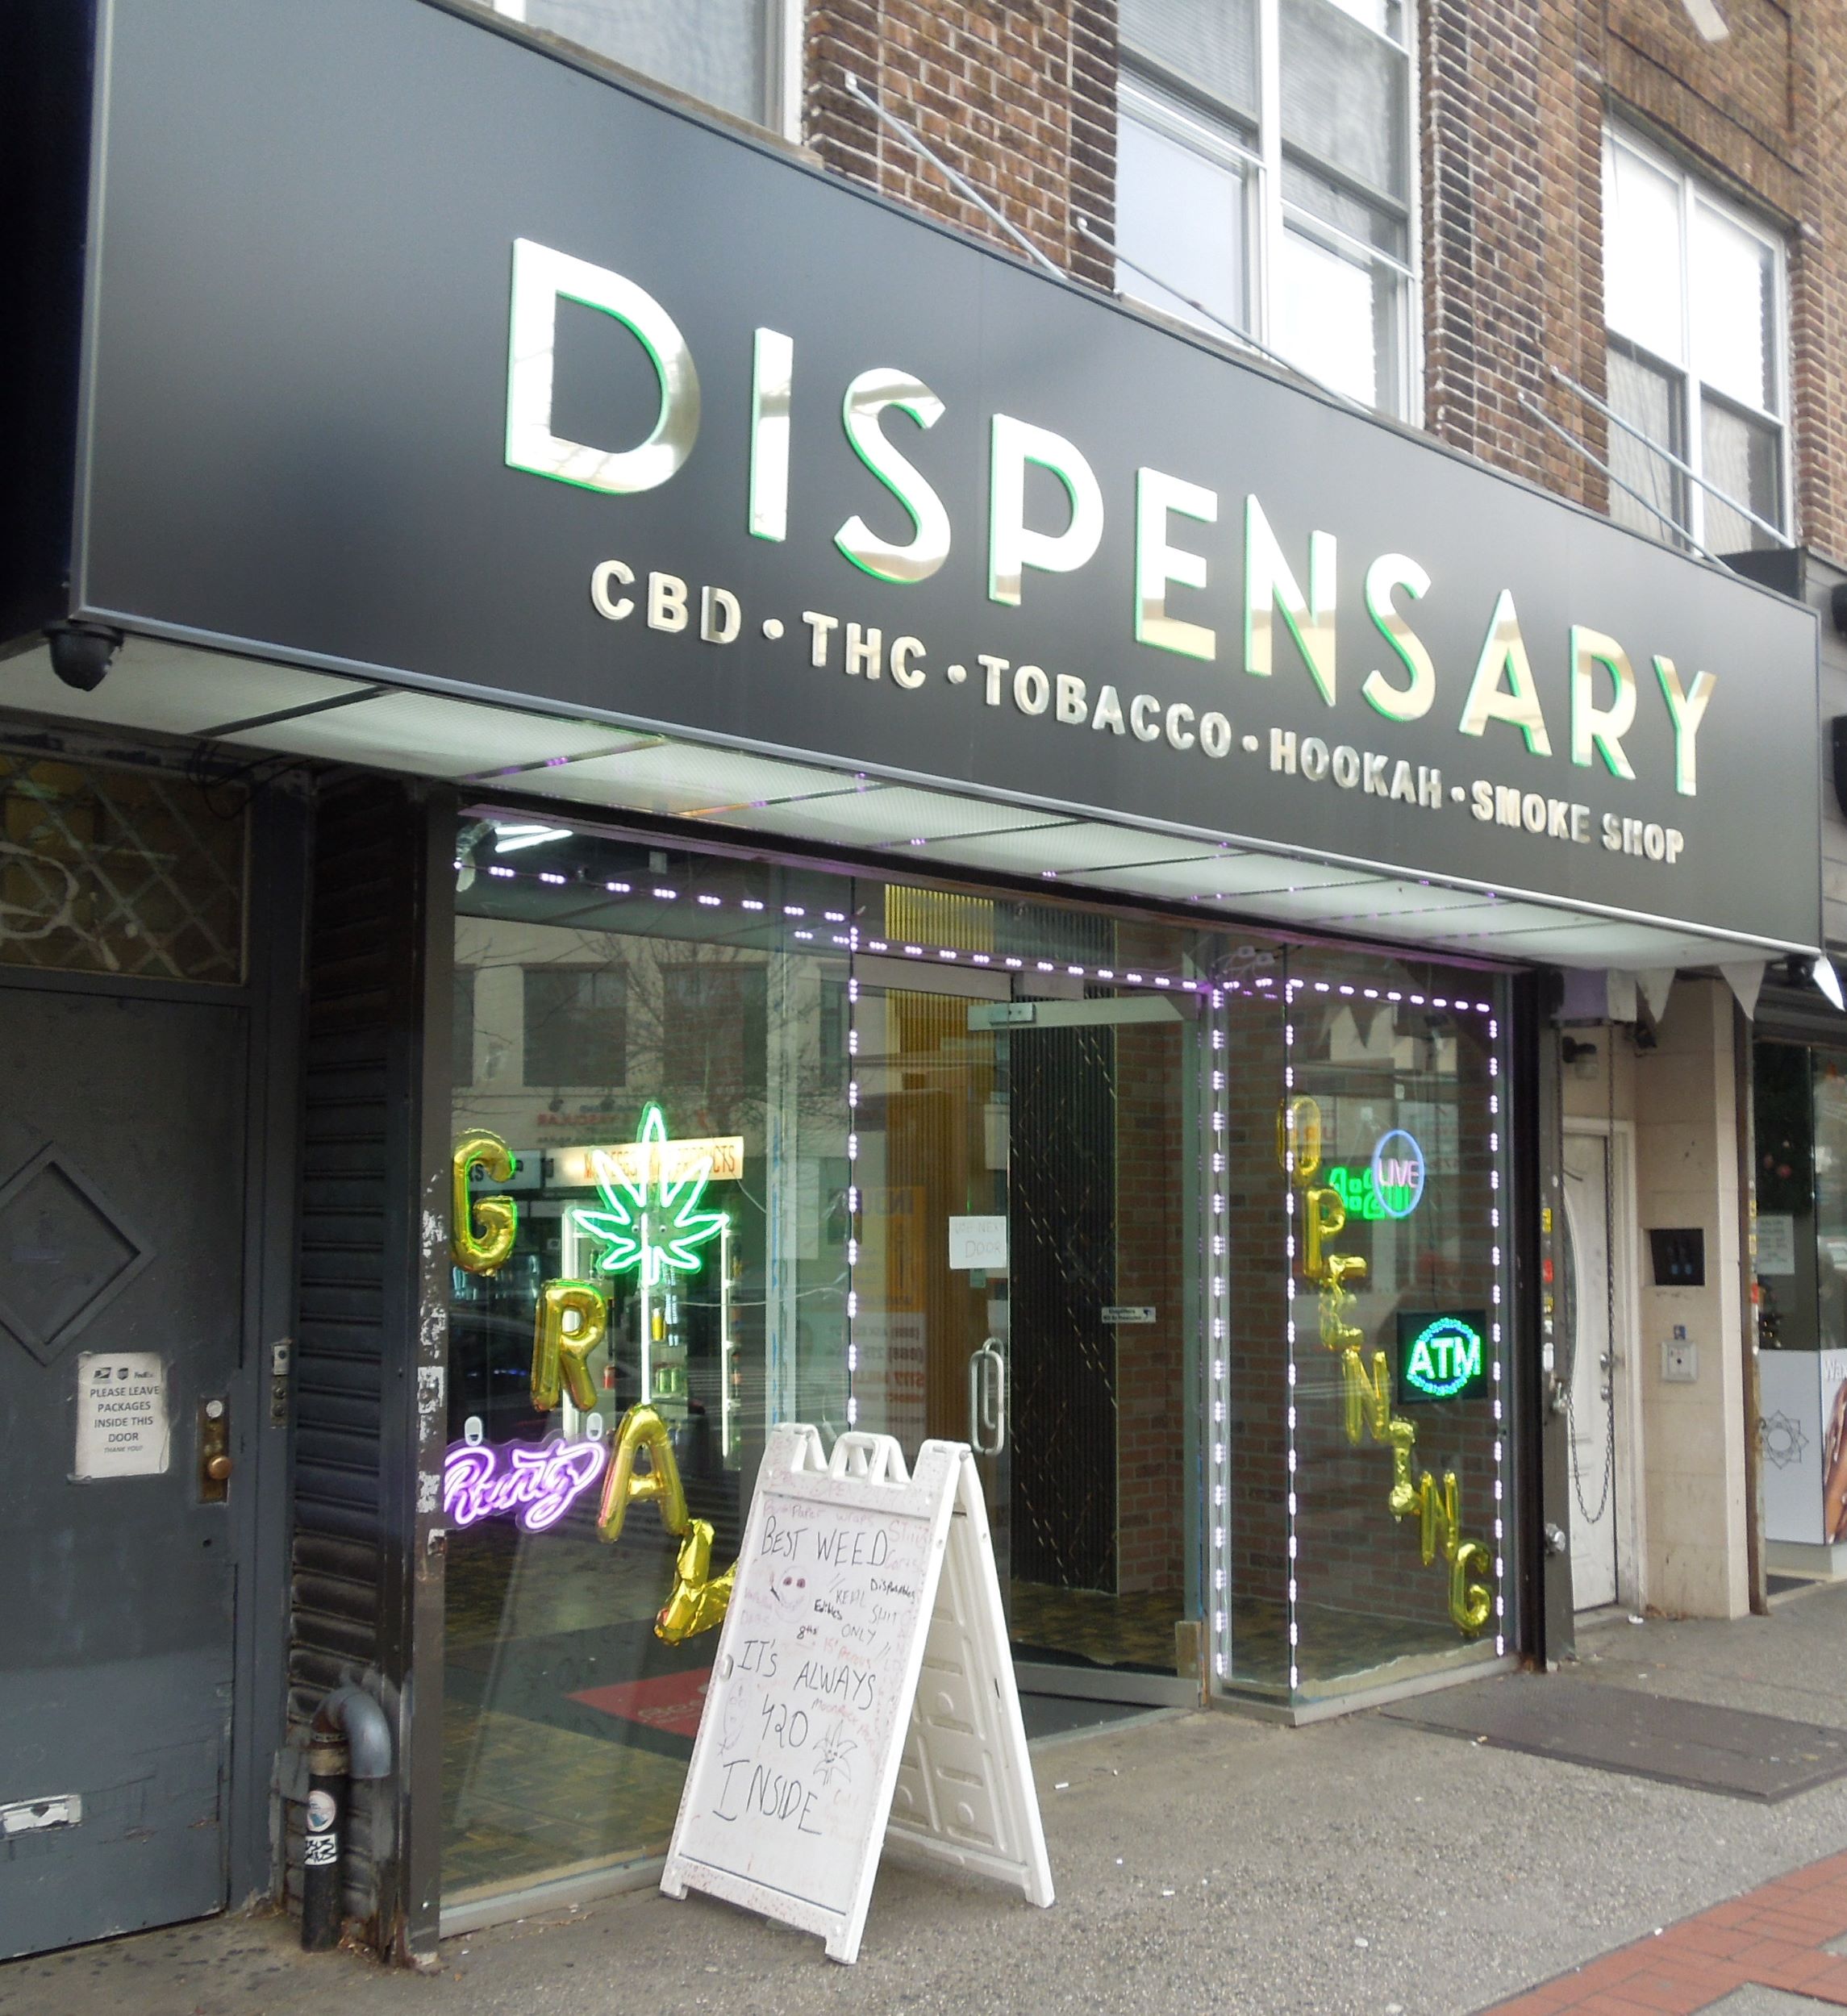 Dispensary